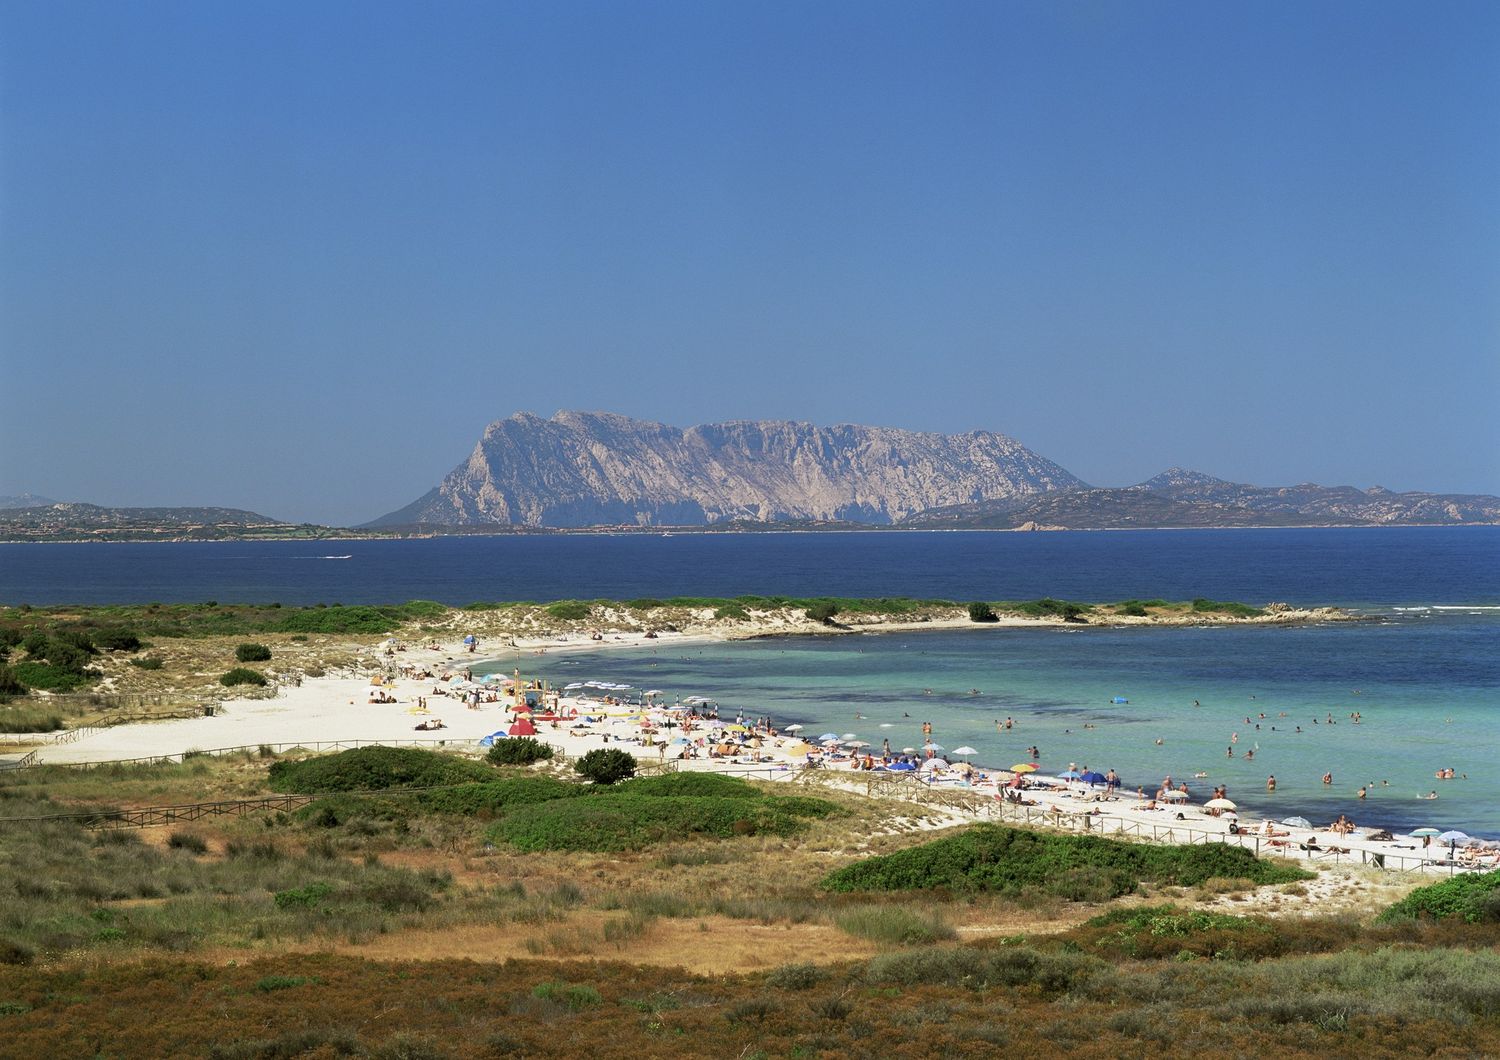 L'Isola di Tavolara vista dalla costa est della Sardegna